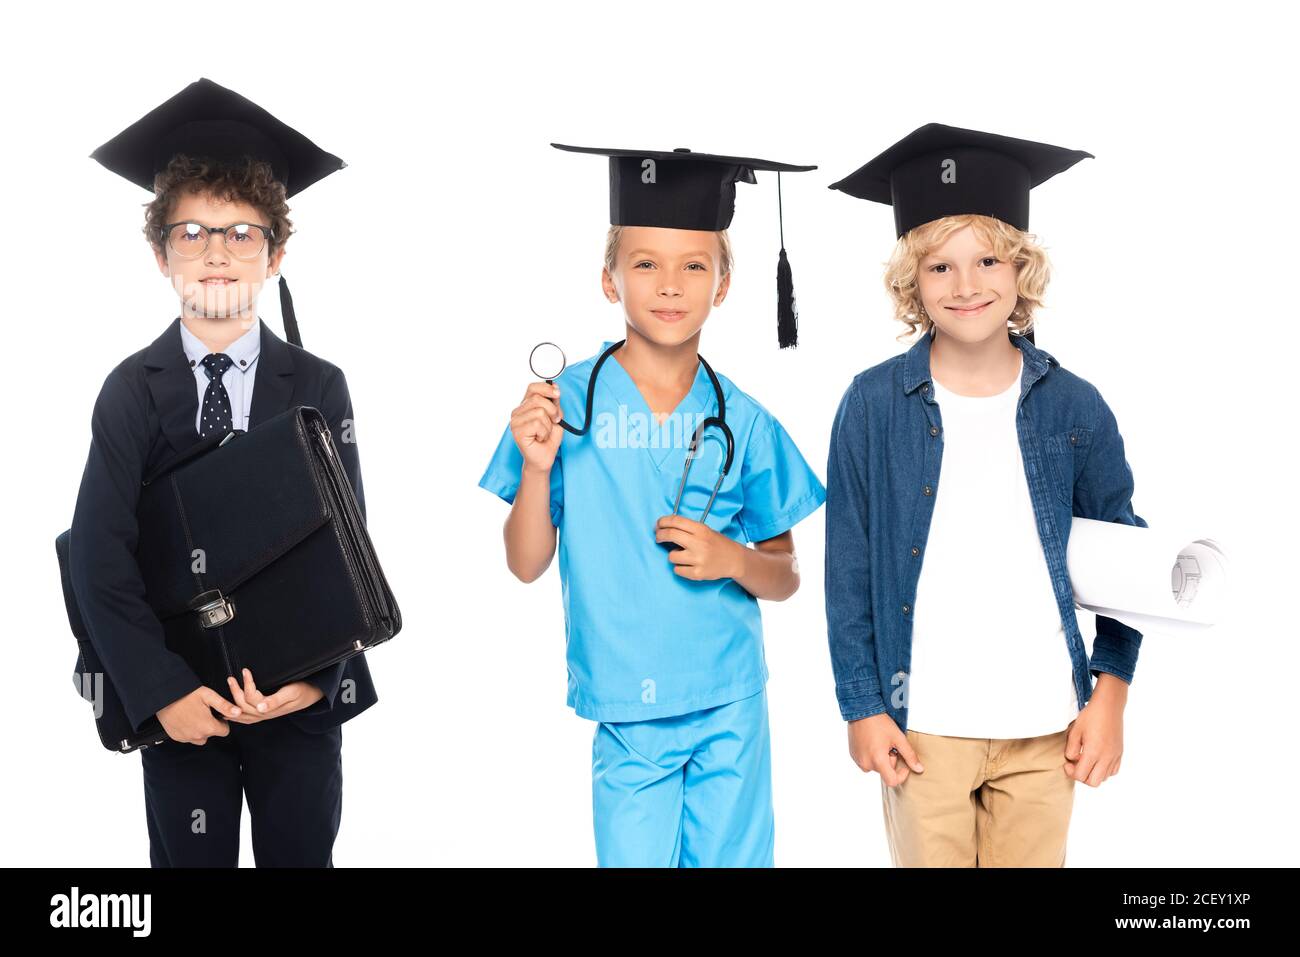 niños en gorras de graduación vestidos con trajes de diferentes profesiones con planos, estetoscopio y maletín aislados en blanco Foto de stock